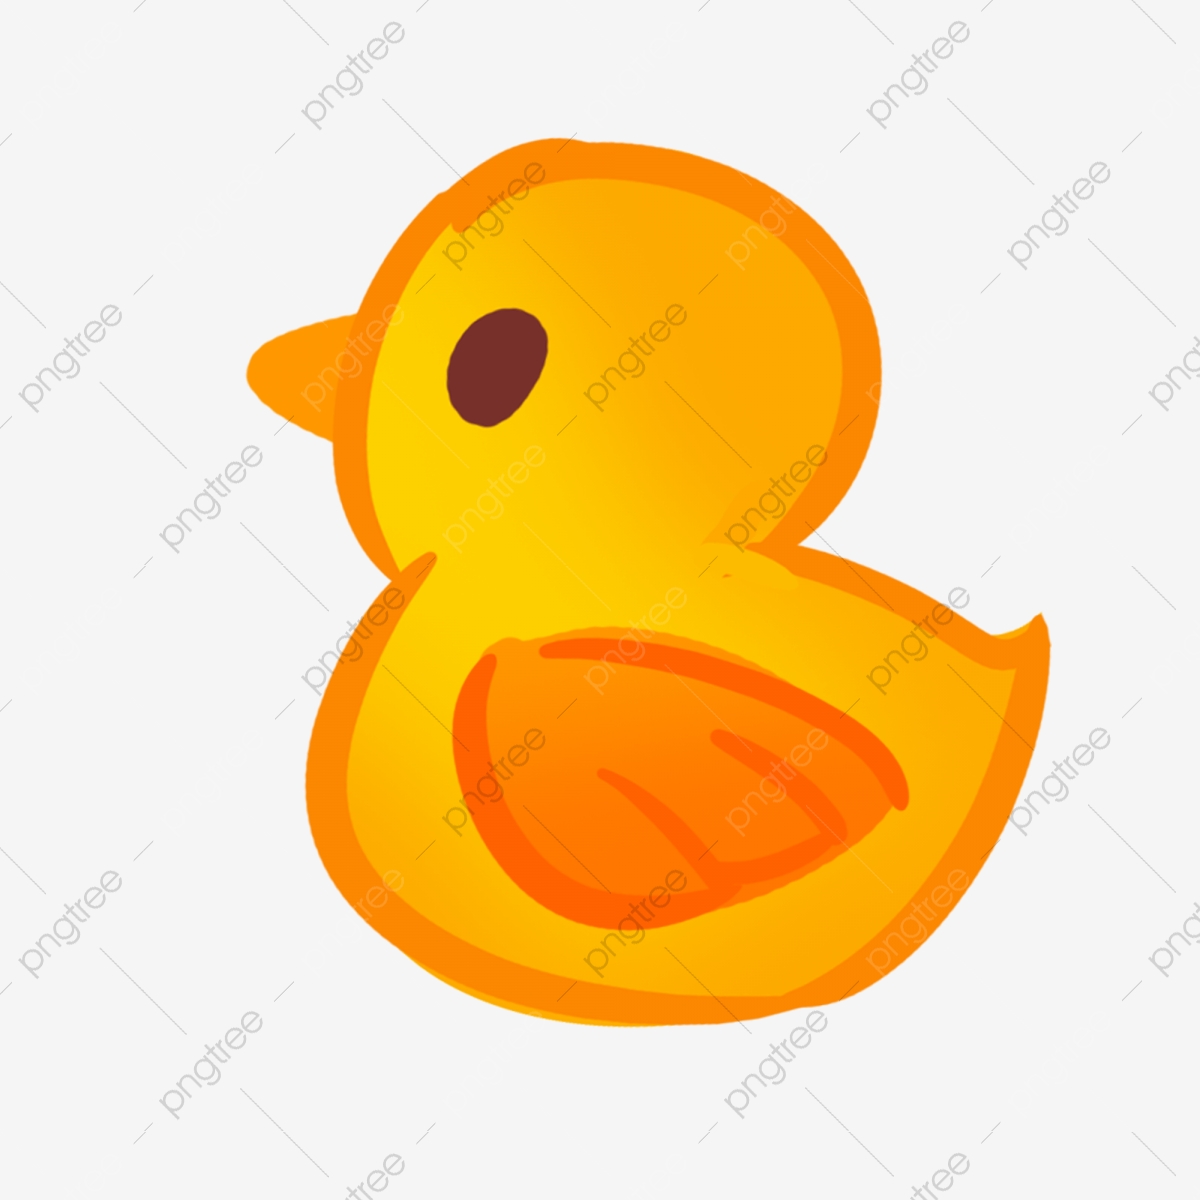 Cartoon download duck . Duckling clipart yellow duckling